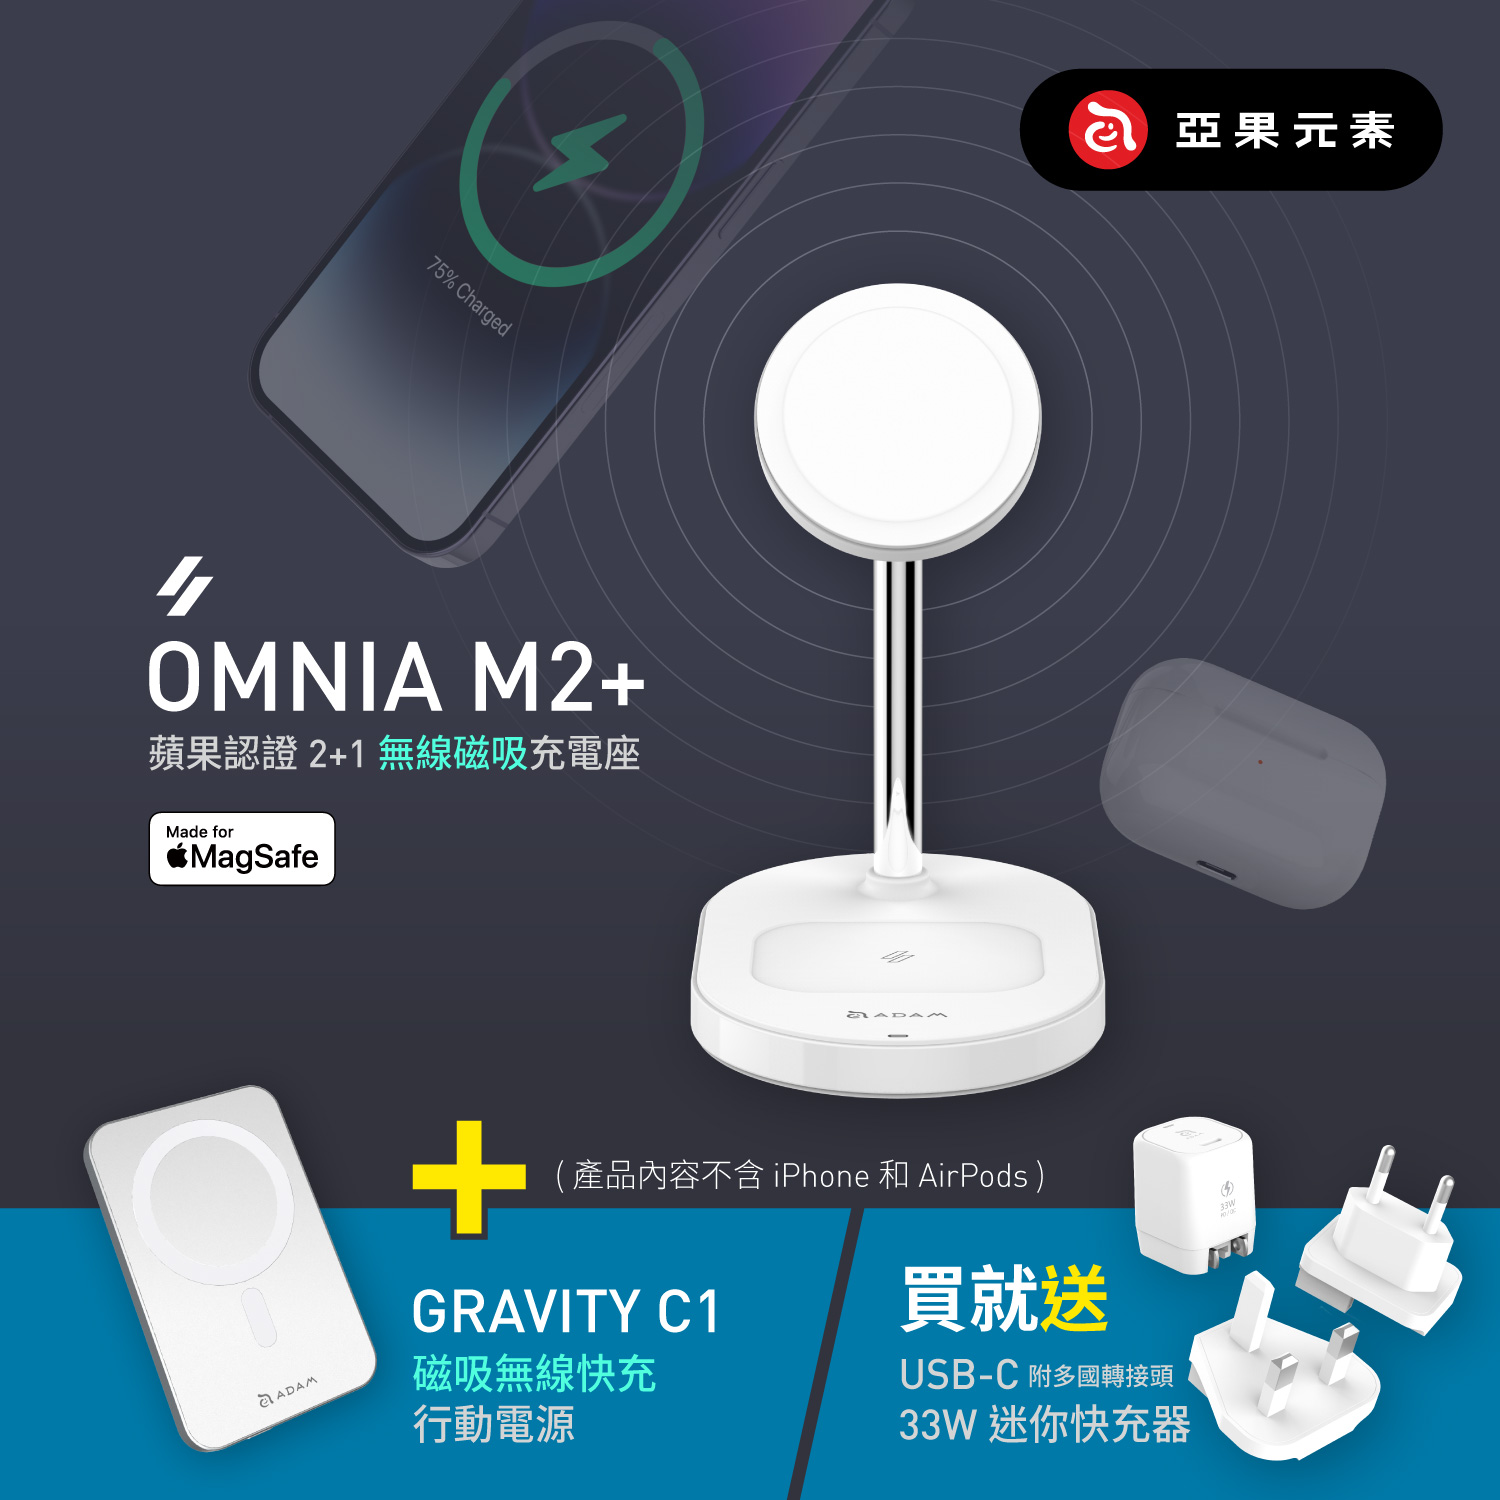 【現貨熱賣中】OMNIA M2+ 蘋果認證2+1磁吸無線充電座_GRAVITY C1 磁吸行動電源